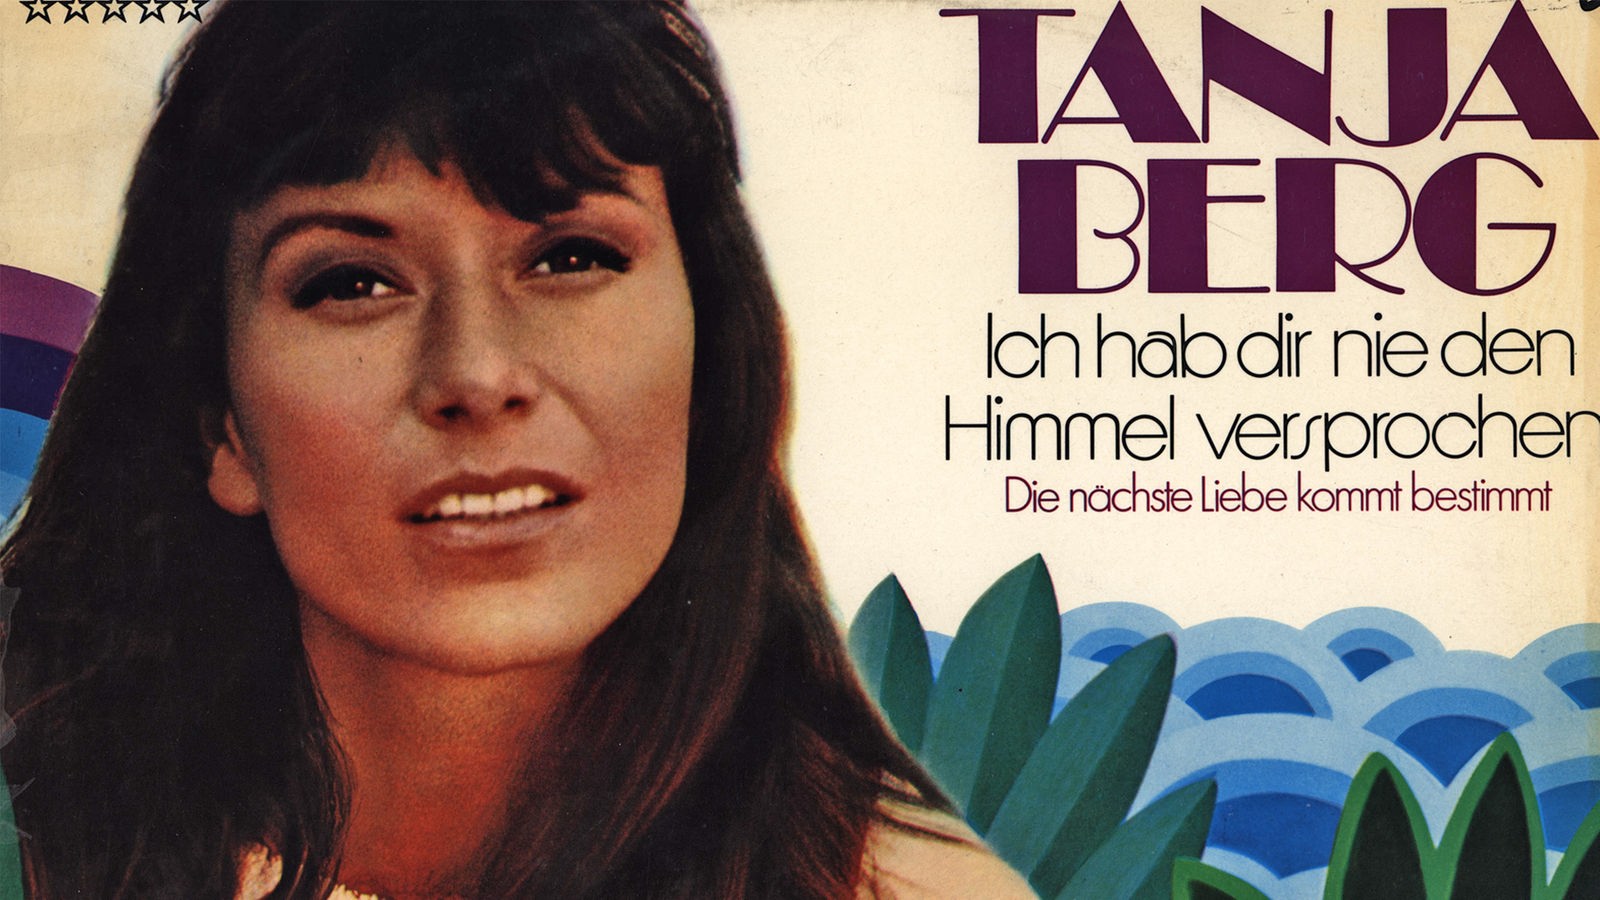 Schallplattenbar: <b>Tanja Berg</b> (1972) - Schallplattenbar - Musik - Kultur - ... - tanja-berg-ich-hab-dir-nie-den-himmel-versprochen-108~_v-gseagaleriexl